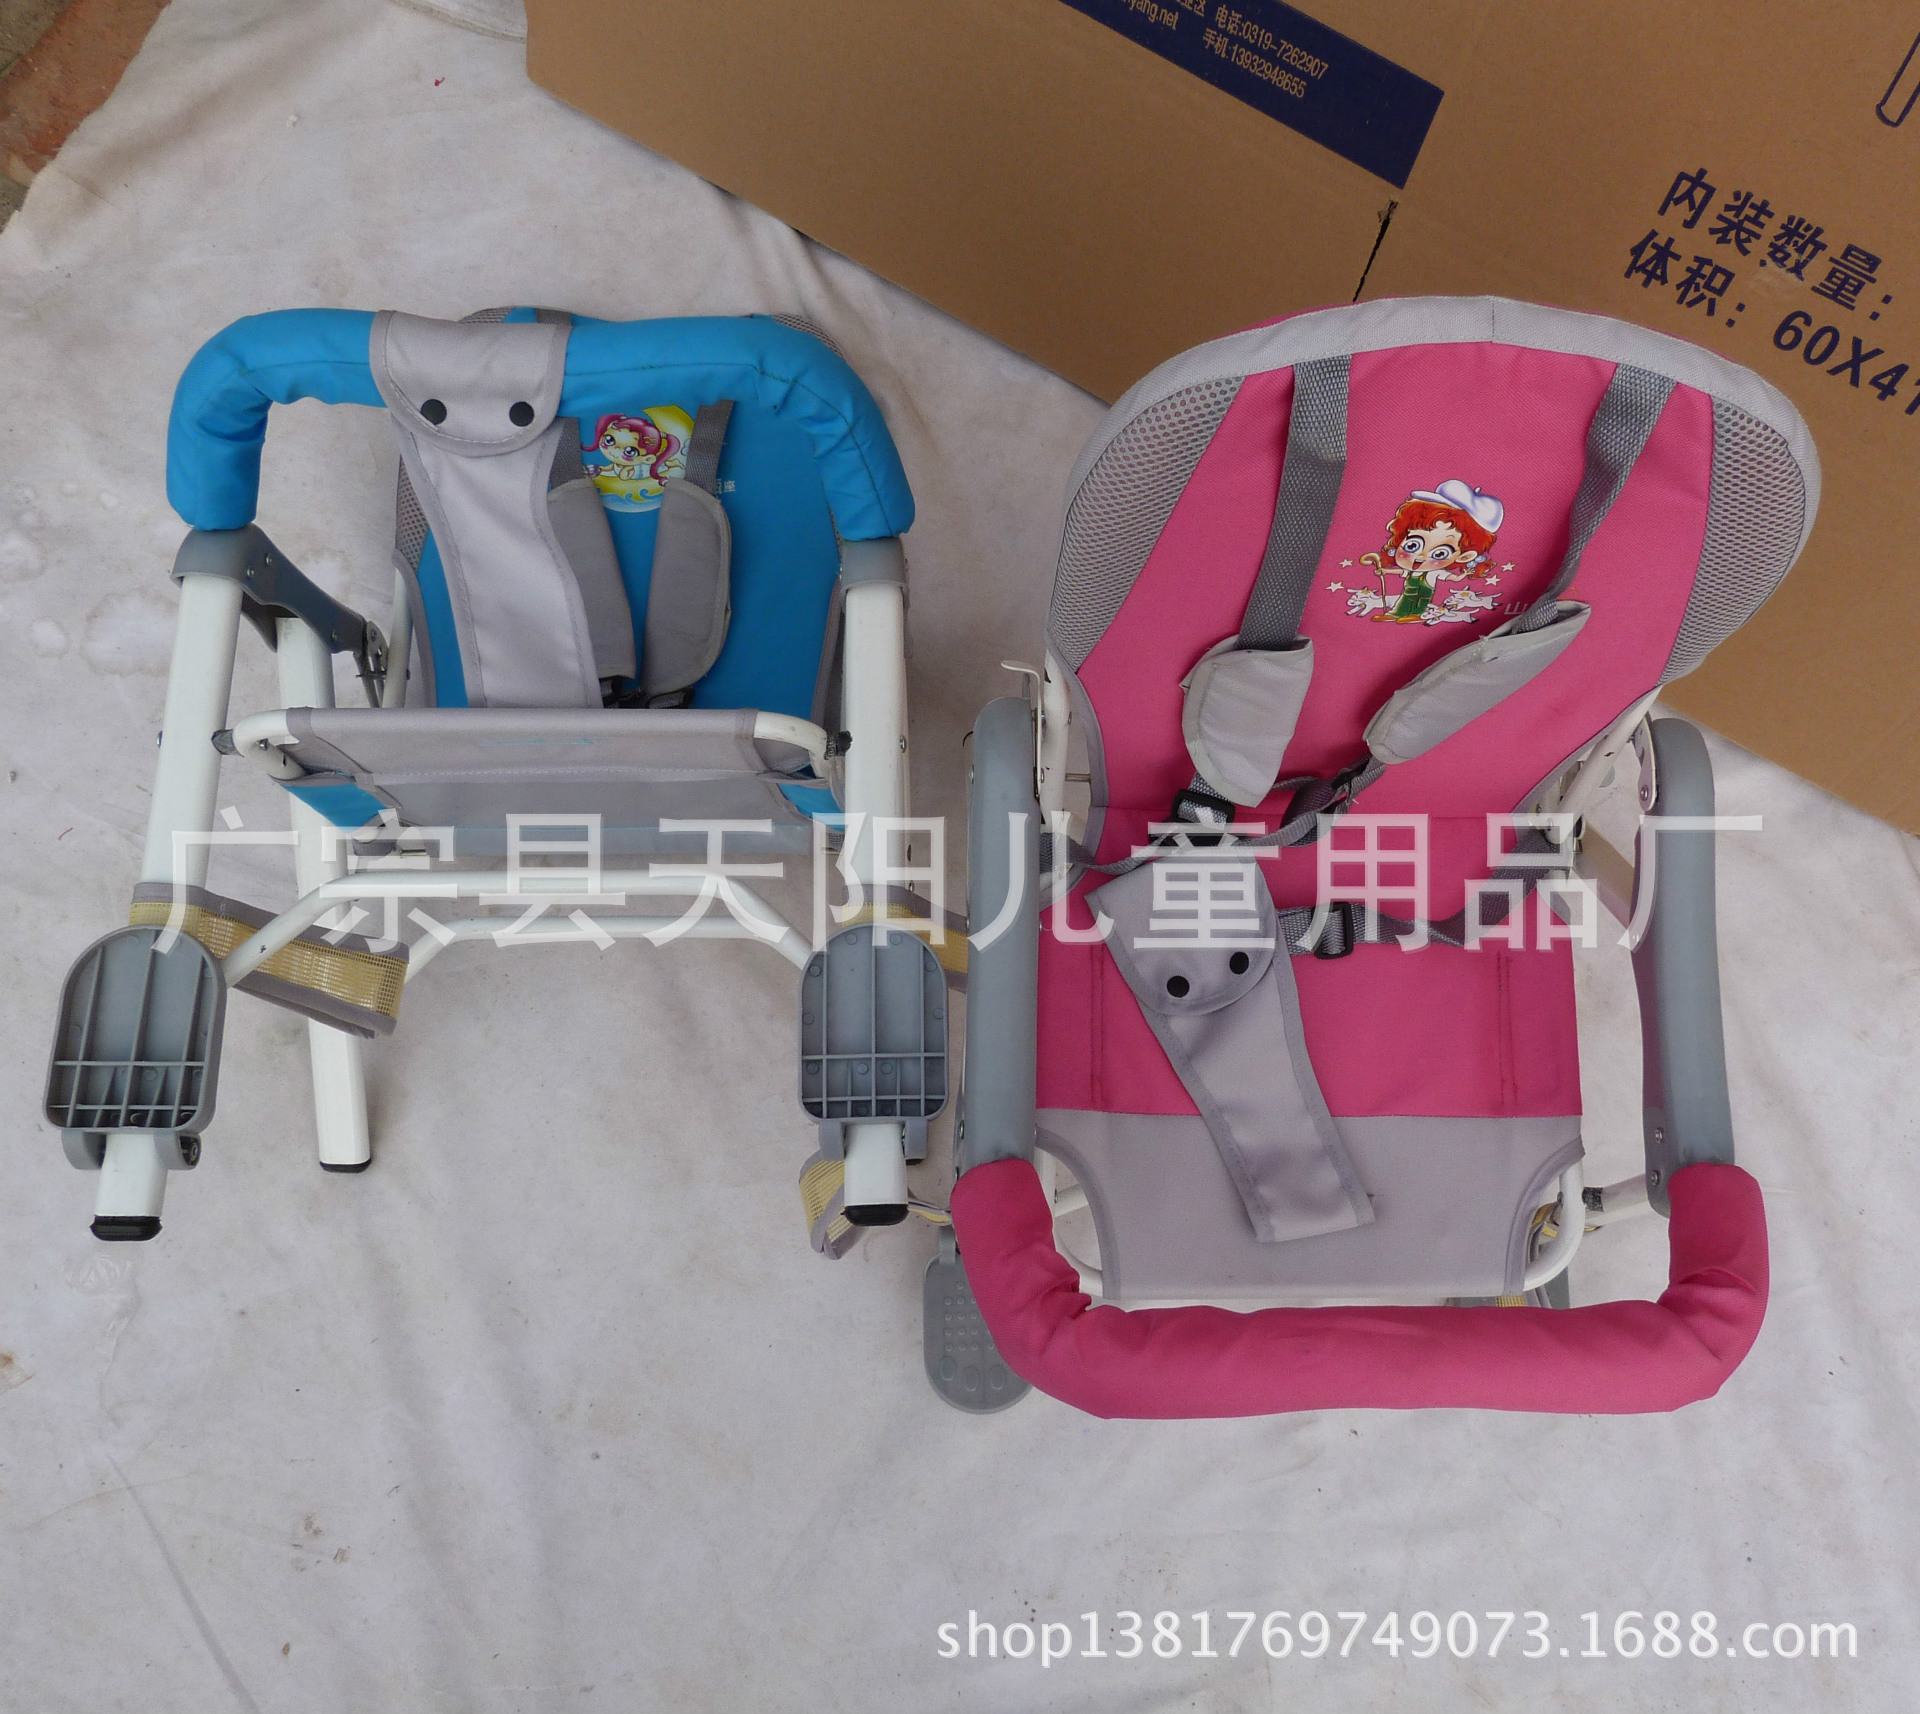 厂家直销电动车儿童后置座椅 自行车后置座椅儿童座椅 c-b-3